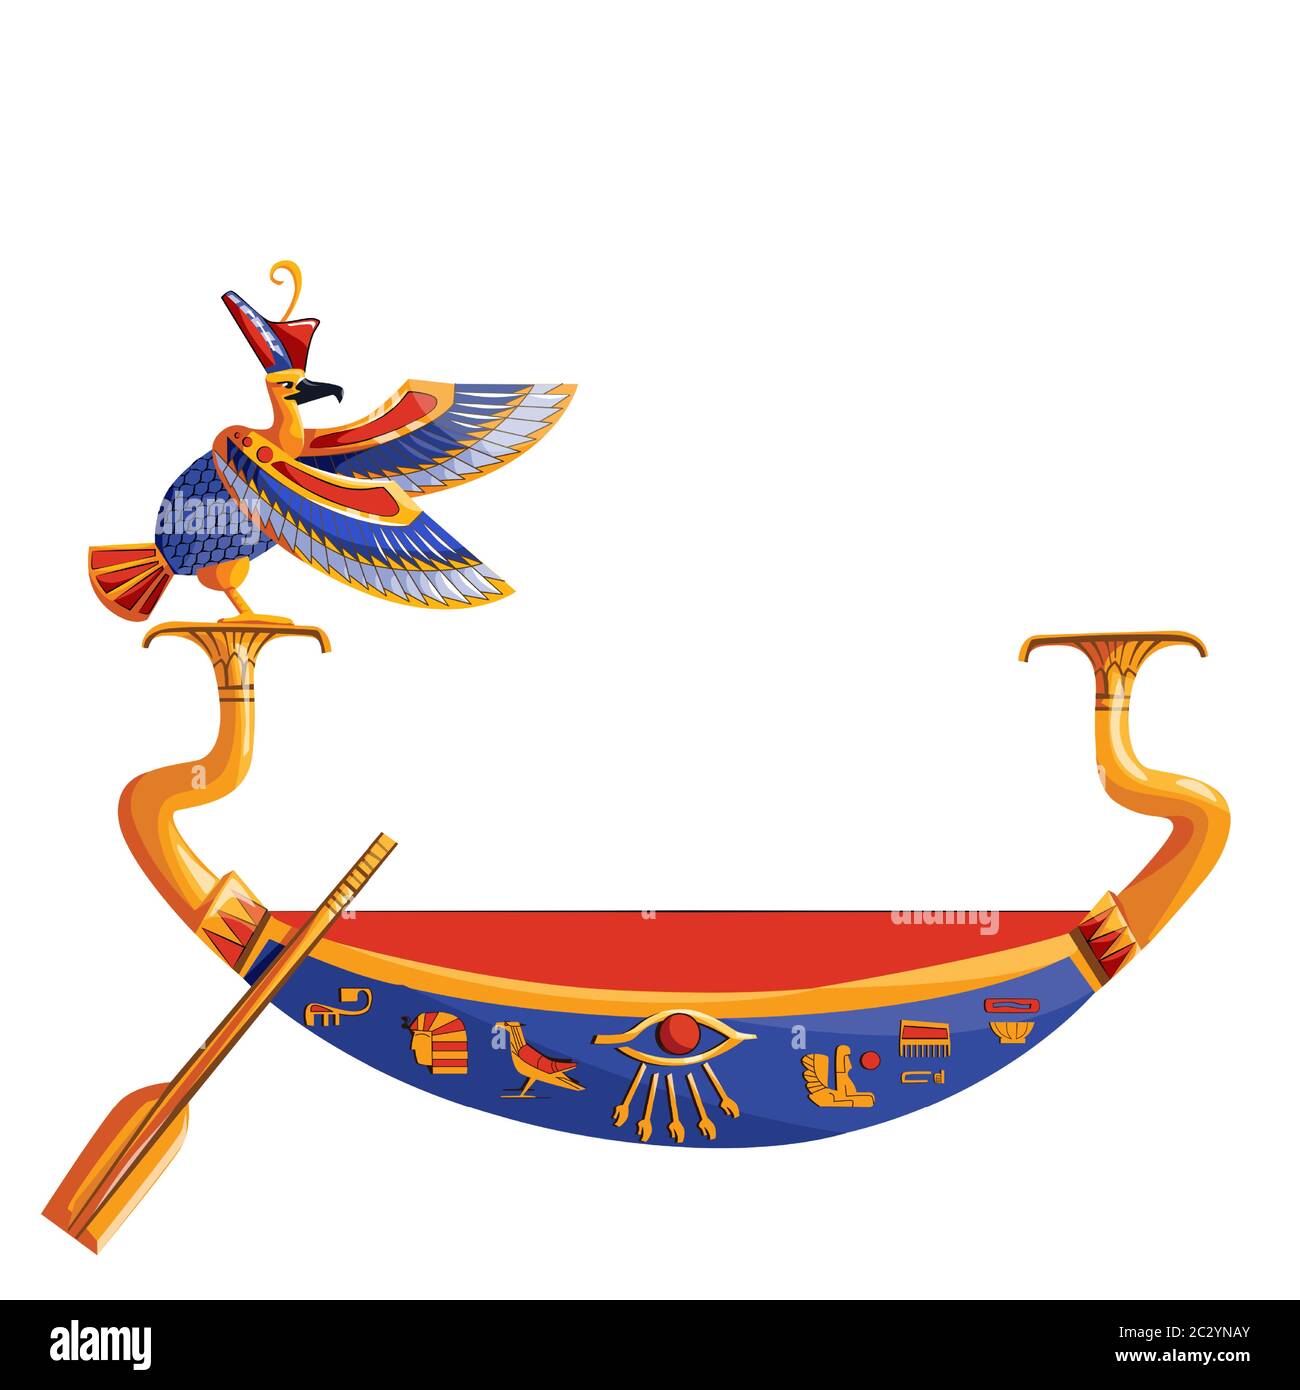 Antico Egitto barca di legno con remi o pagaia per il sole dio viaggio cartoon illustrazione vettoriale. Simbolo religioso della cultura egiziana, barbecue decorato con bi Illustrazione Vettoriale